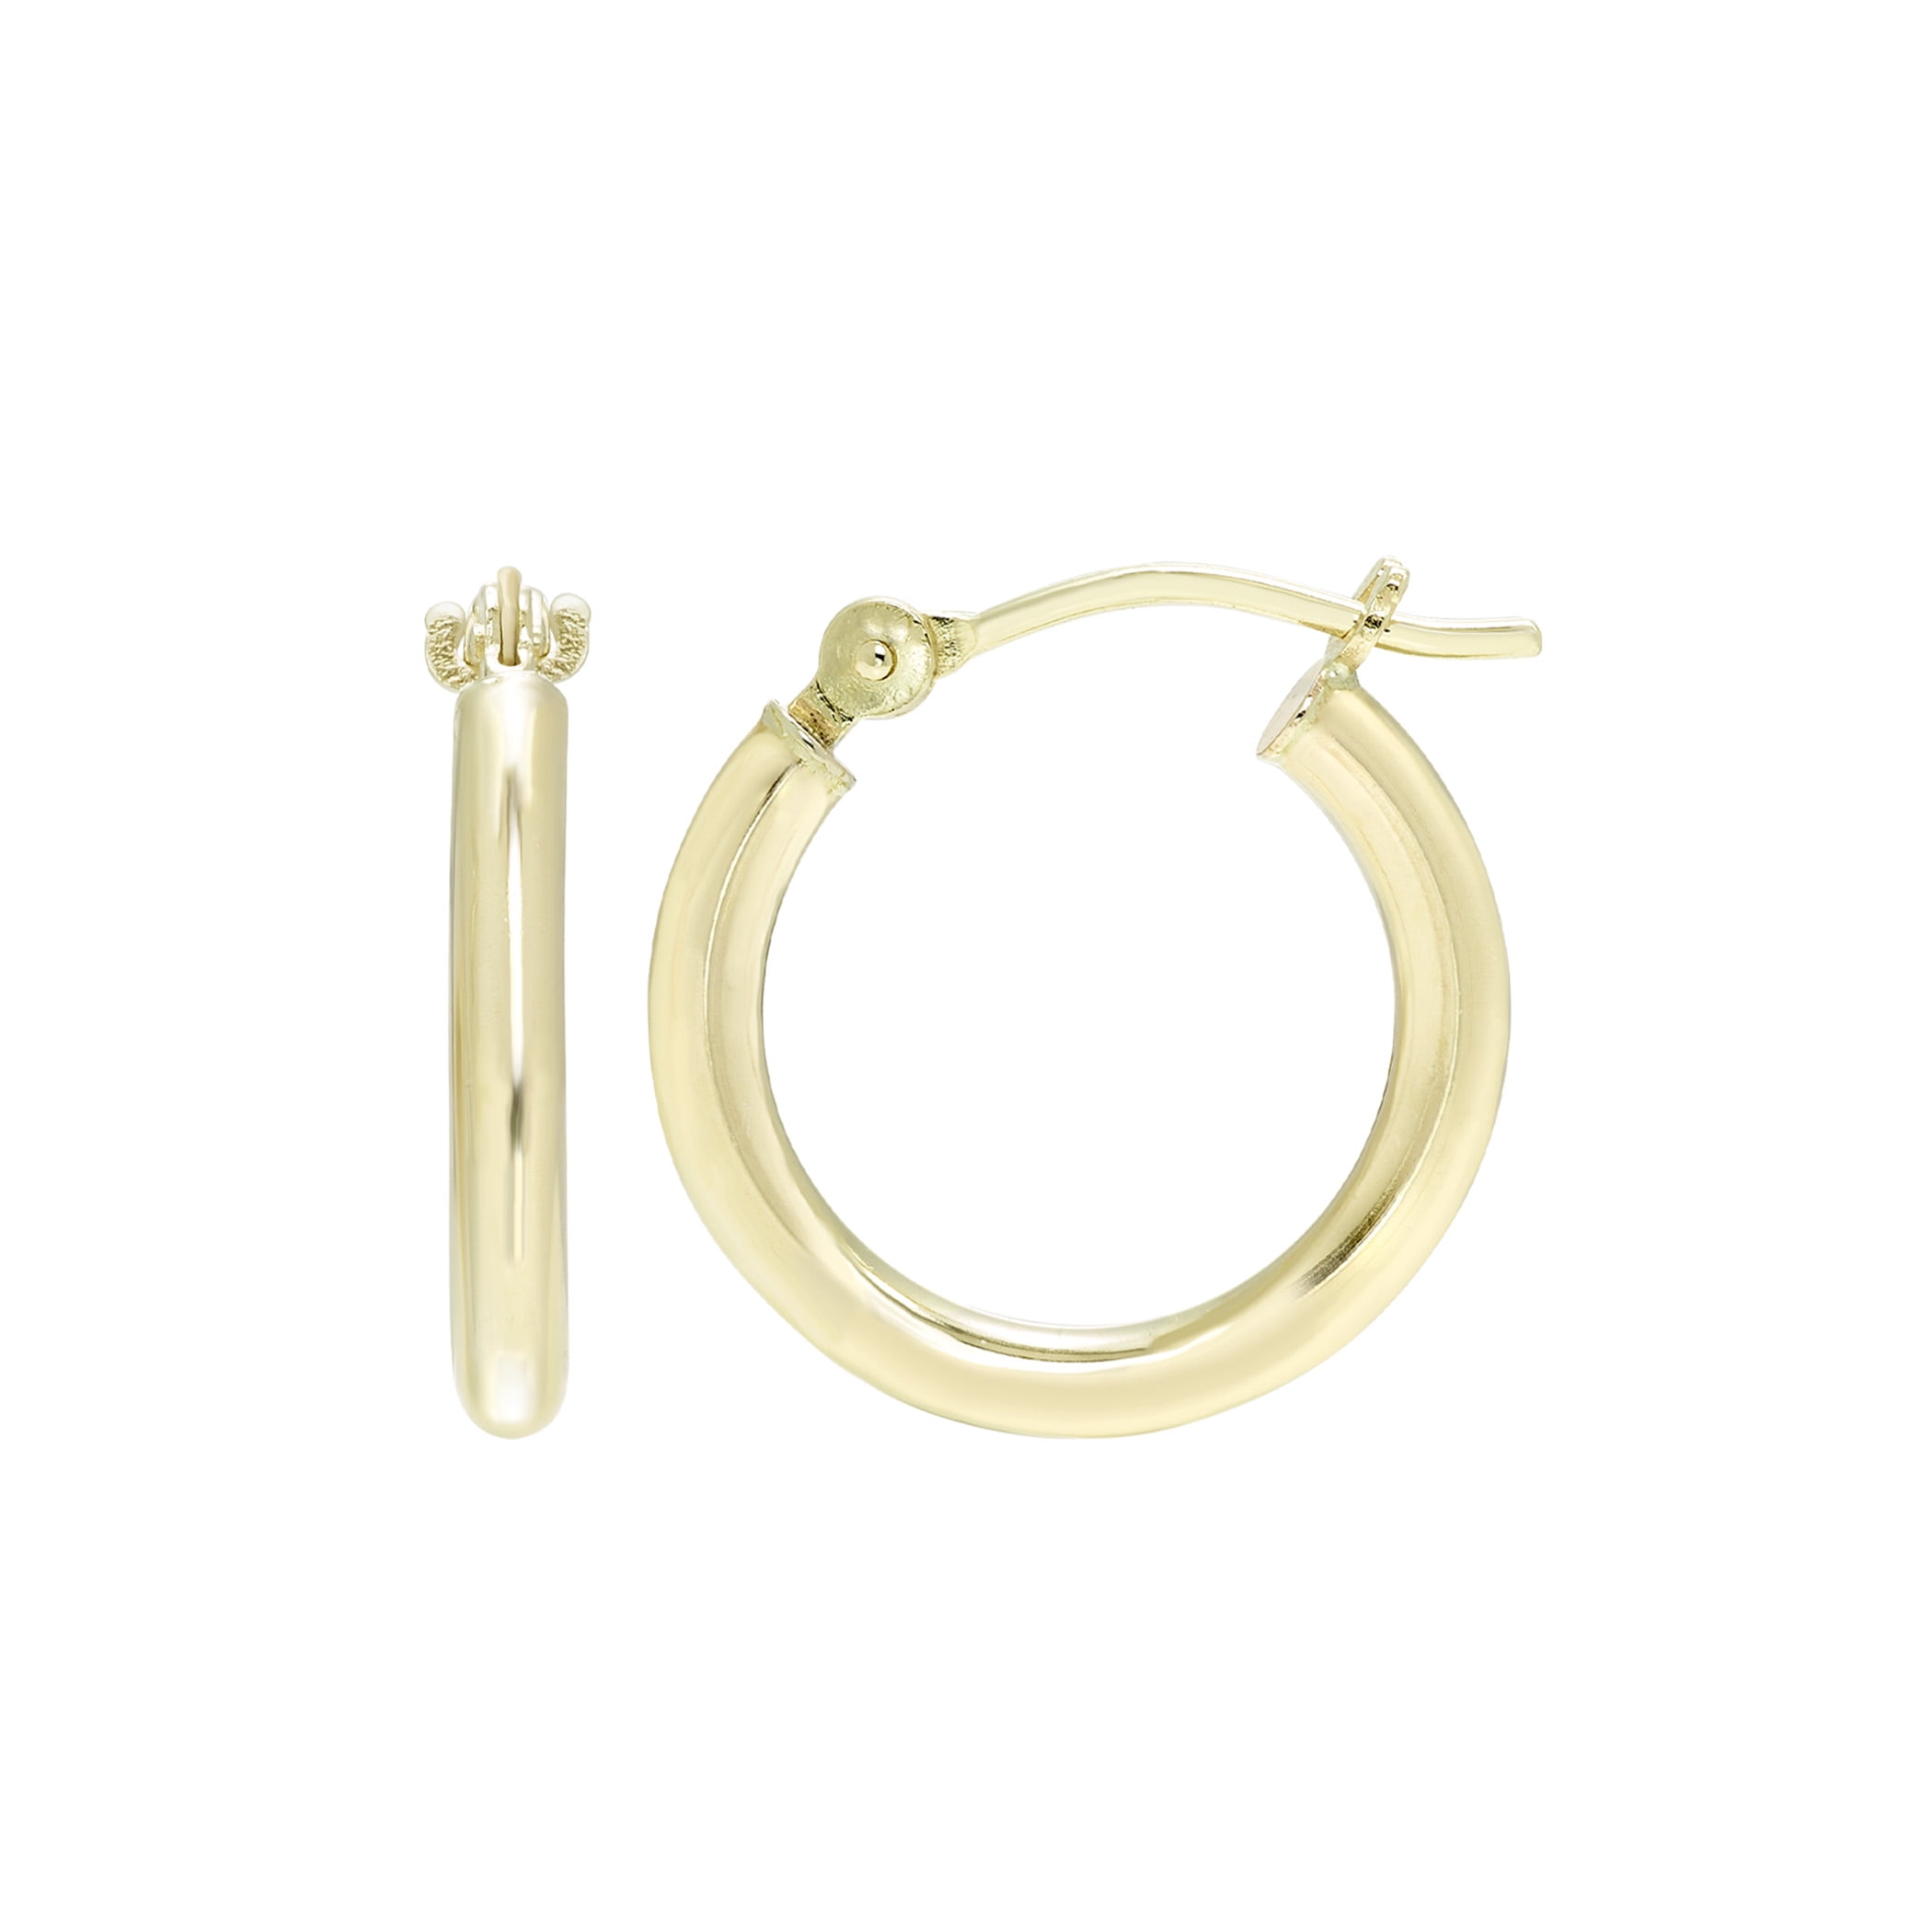 Medium hoop earrings – Ruth Ryan